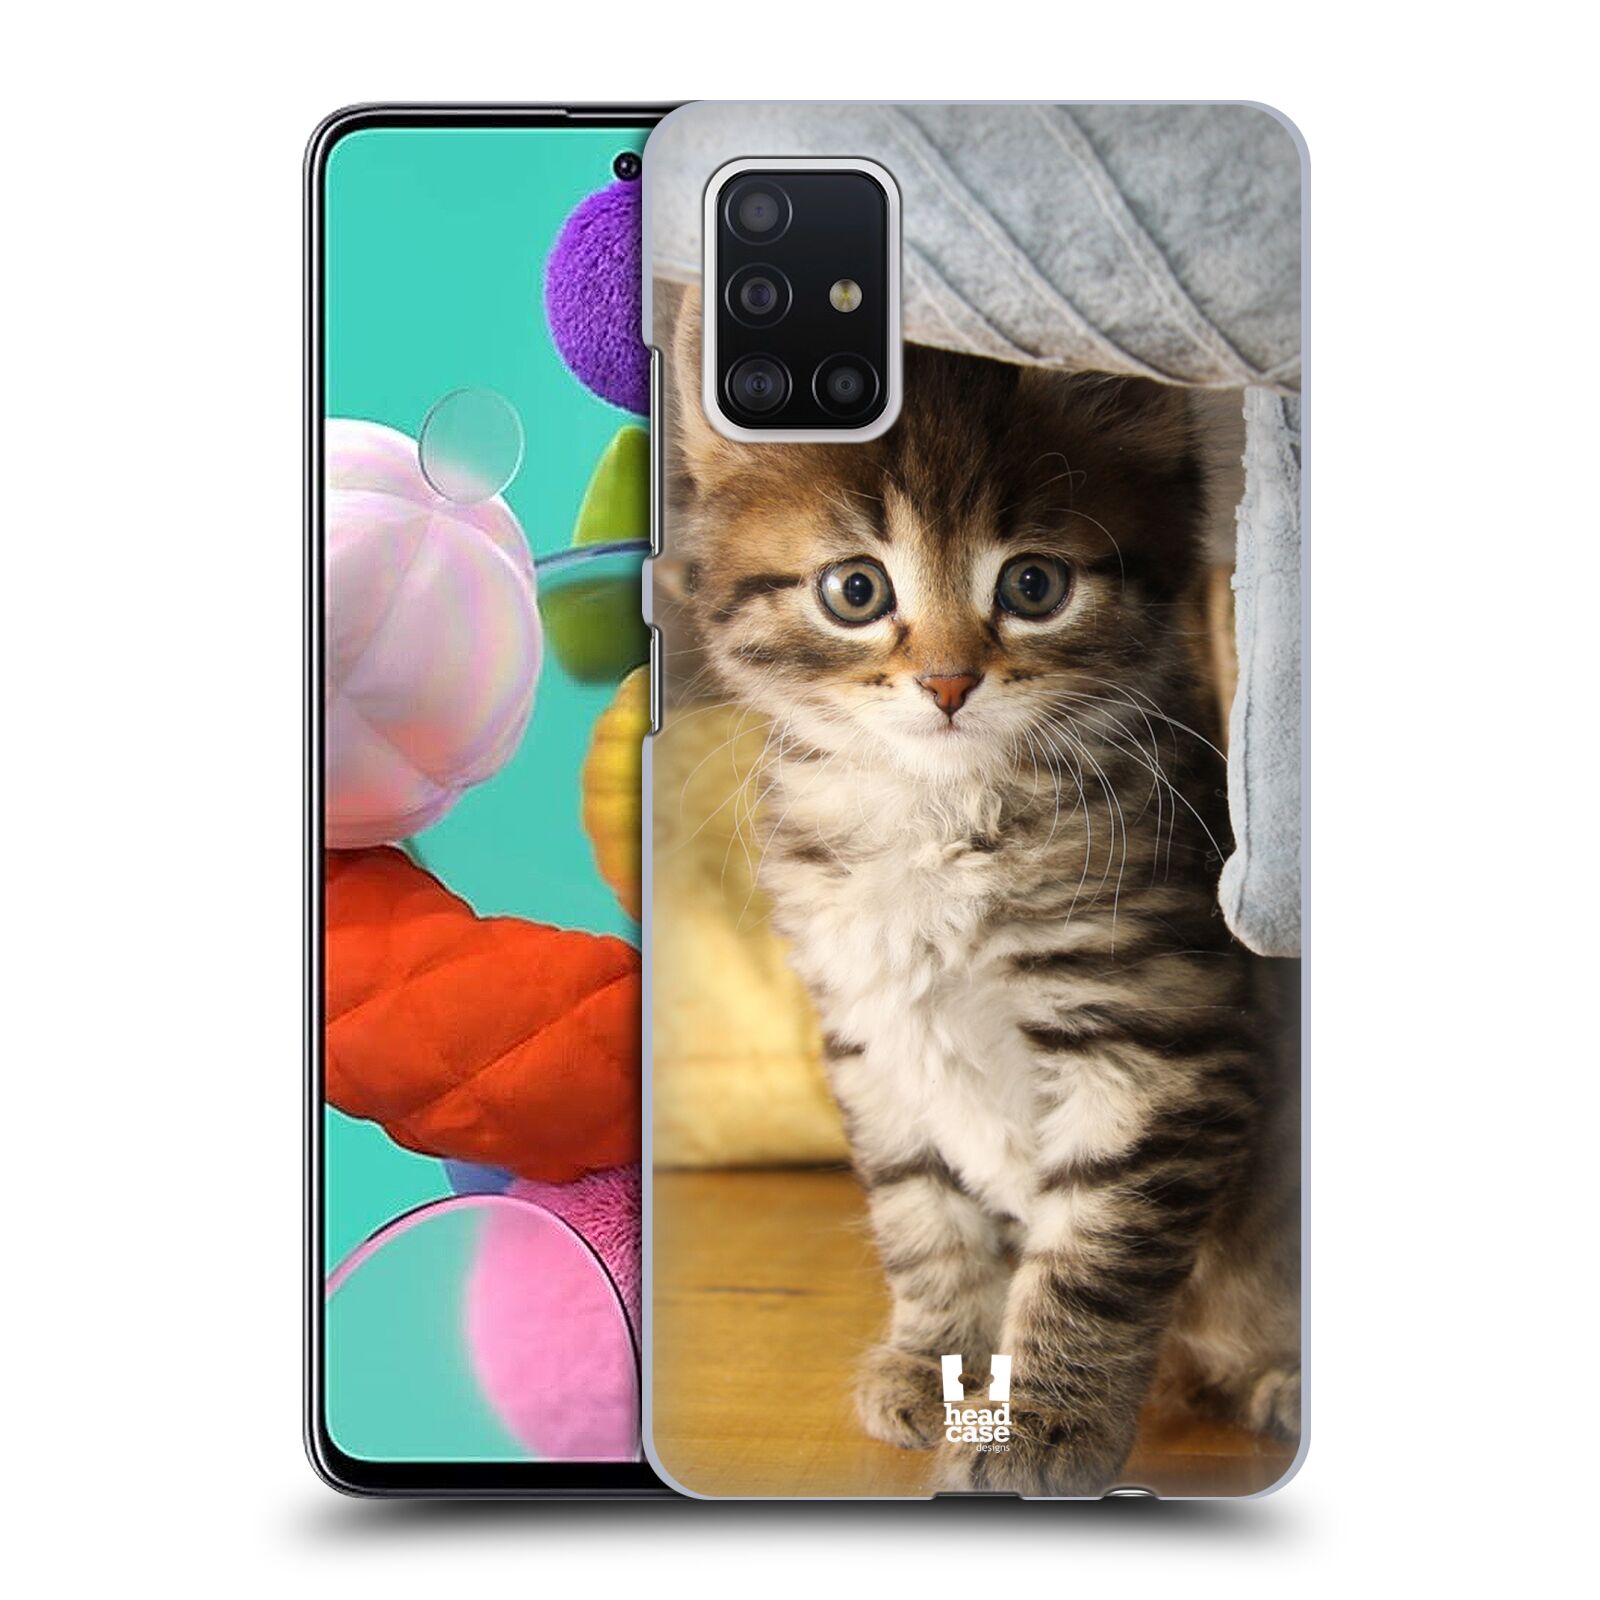 Pouzdro na mobil Samsung Galaxy A51 - HEAD CASE - vzor Kočičky koťata foto mourek